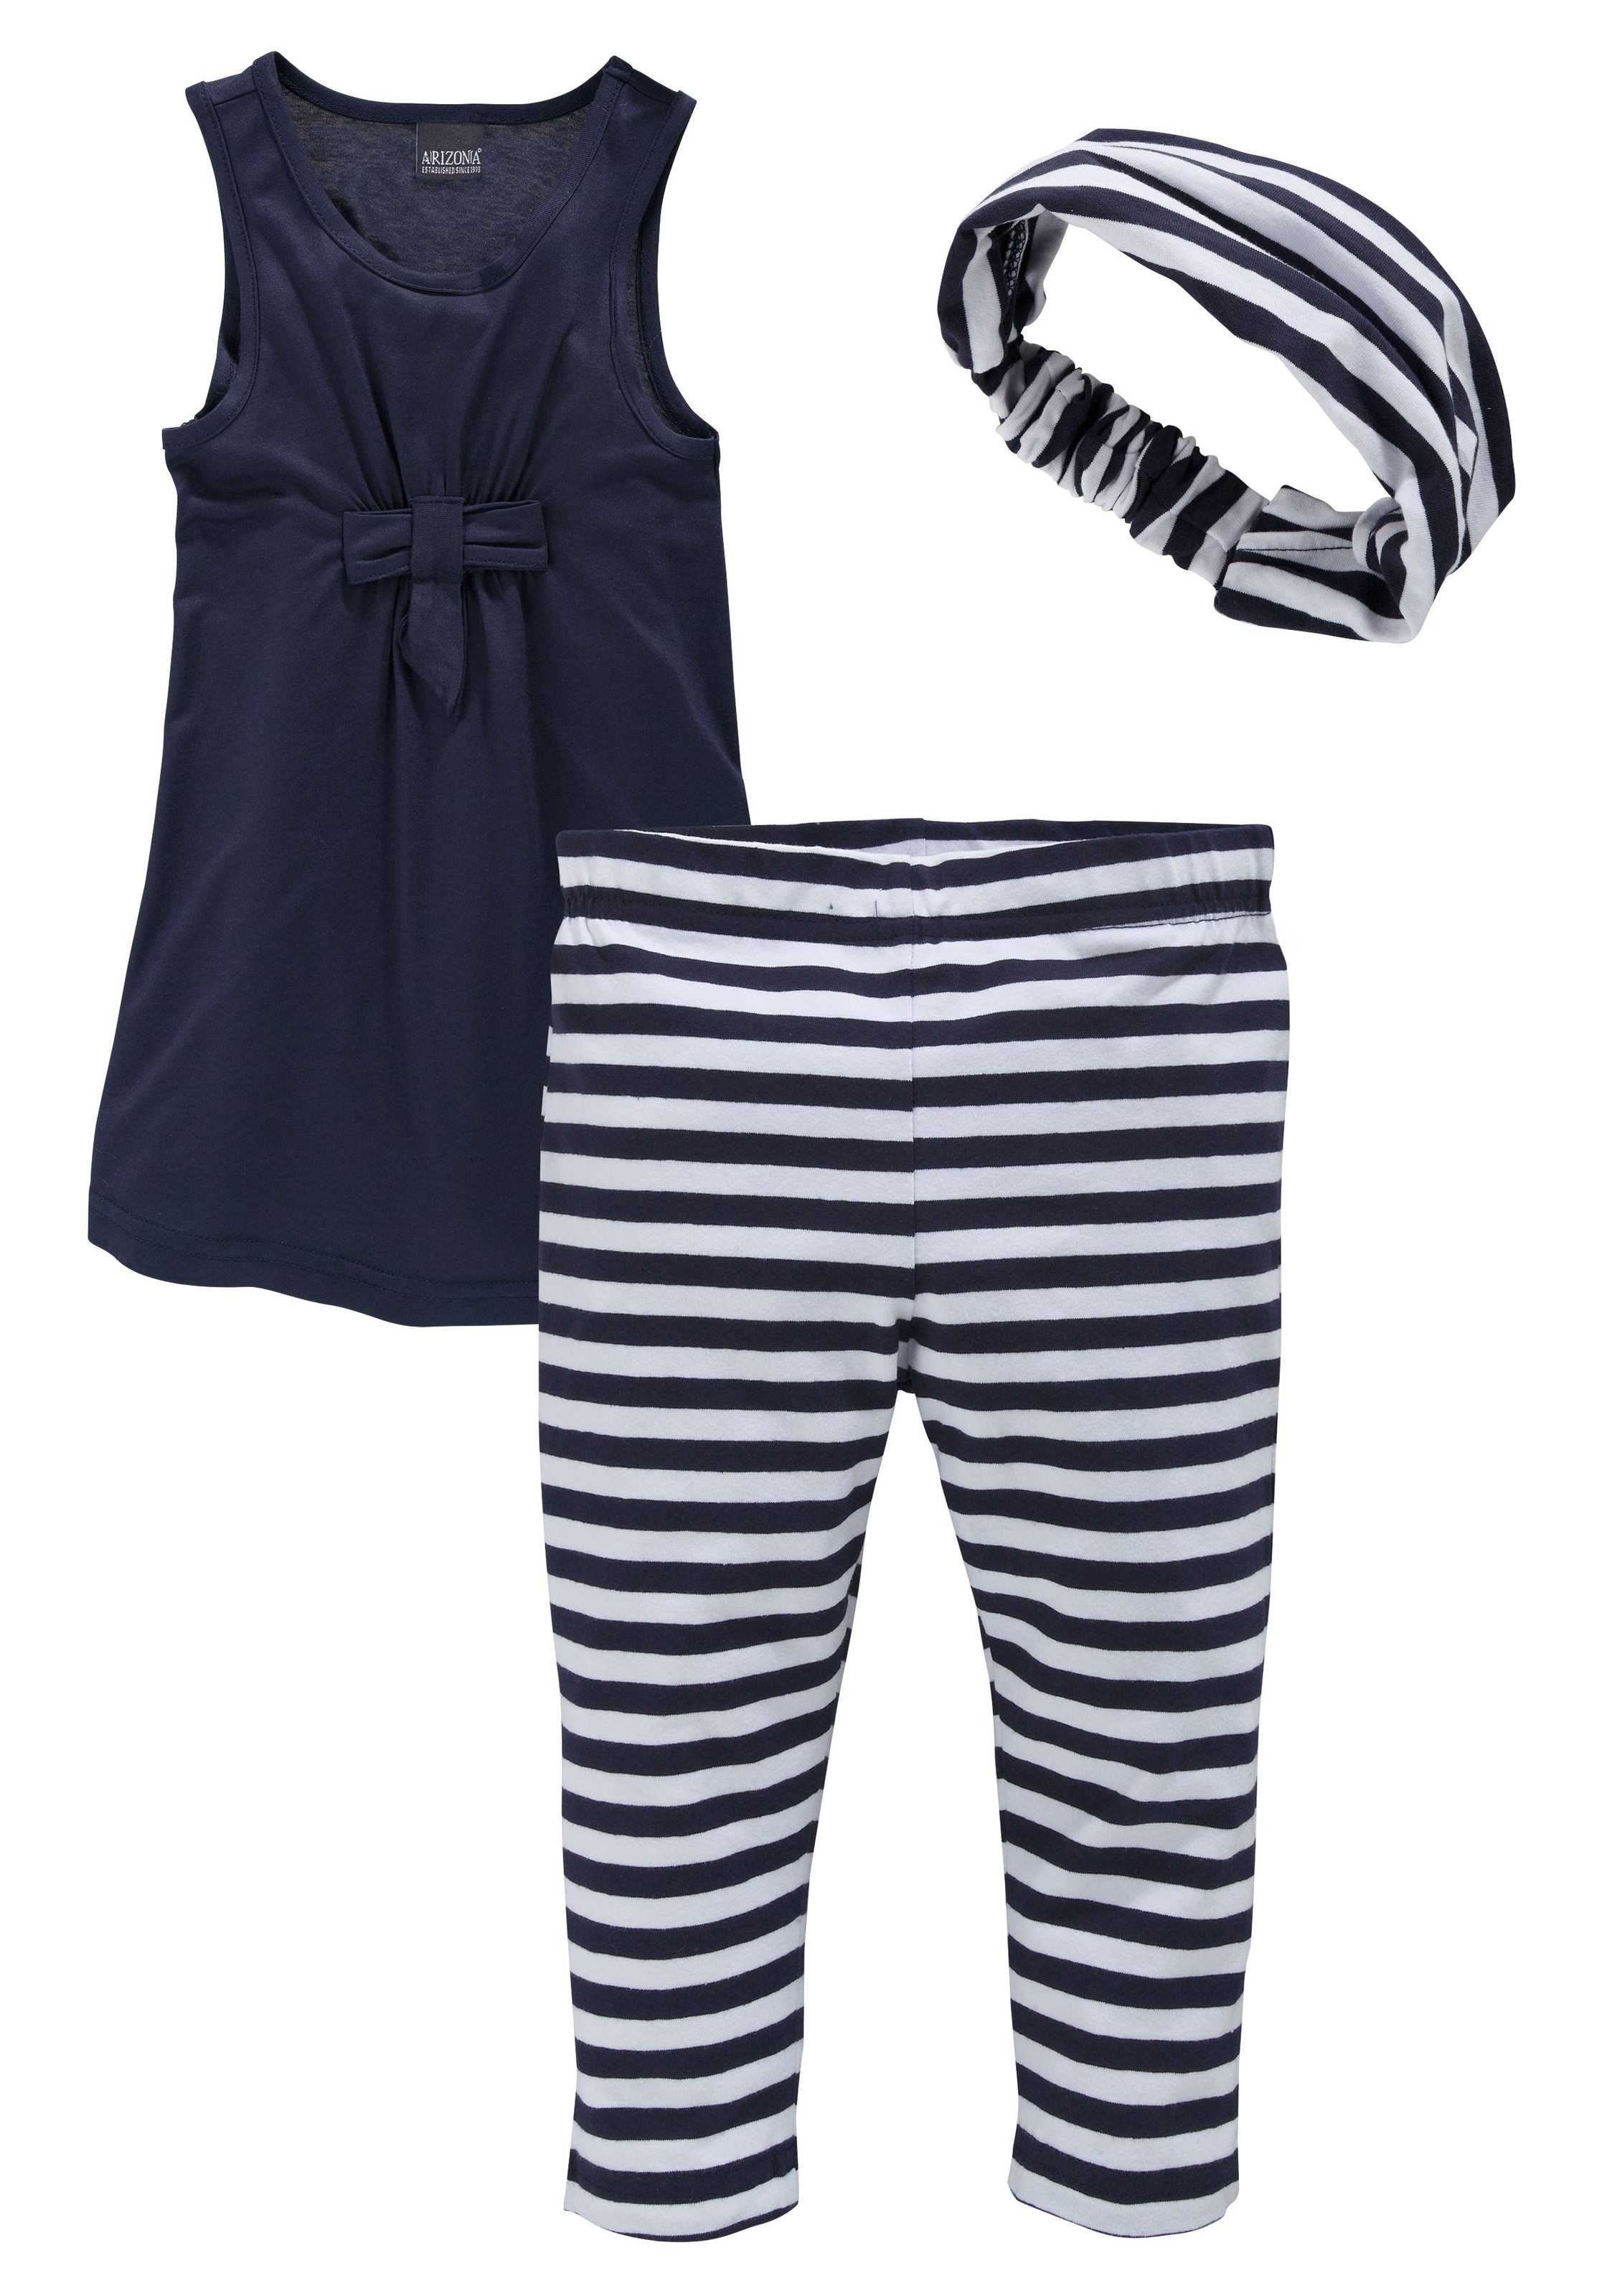 KIDSWORLD Kleid, Leggings & Haarband, (Set, 3 tlg.), Capri und Haarband  maritim geringelt bestellen bei OTTO